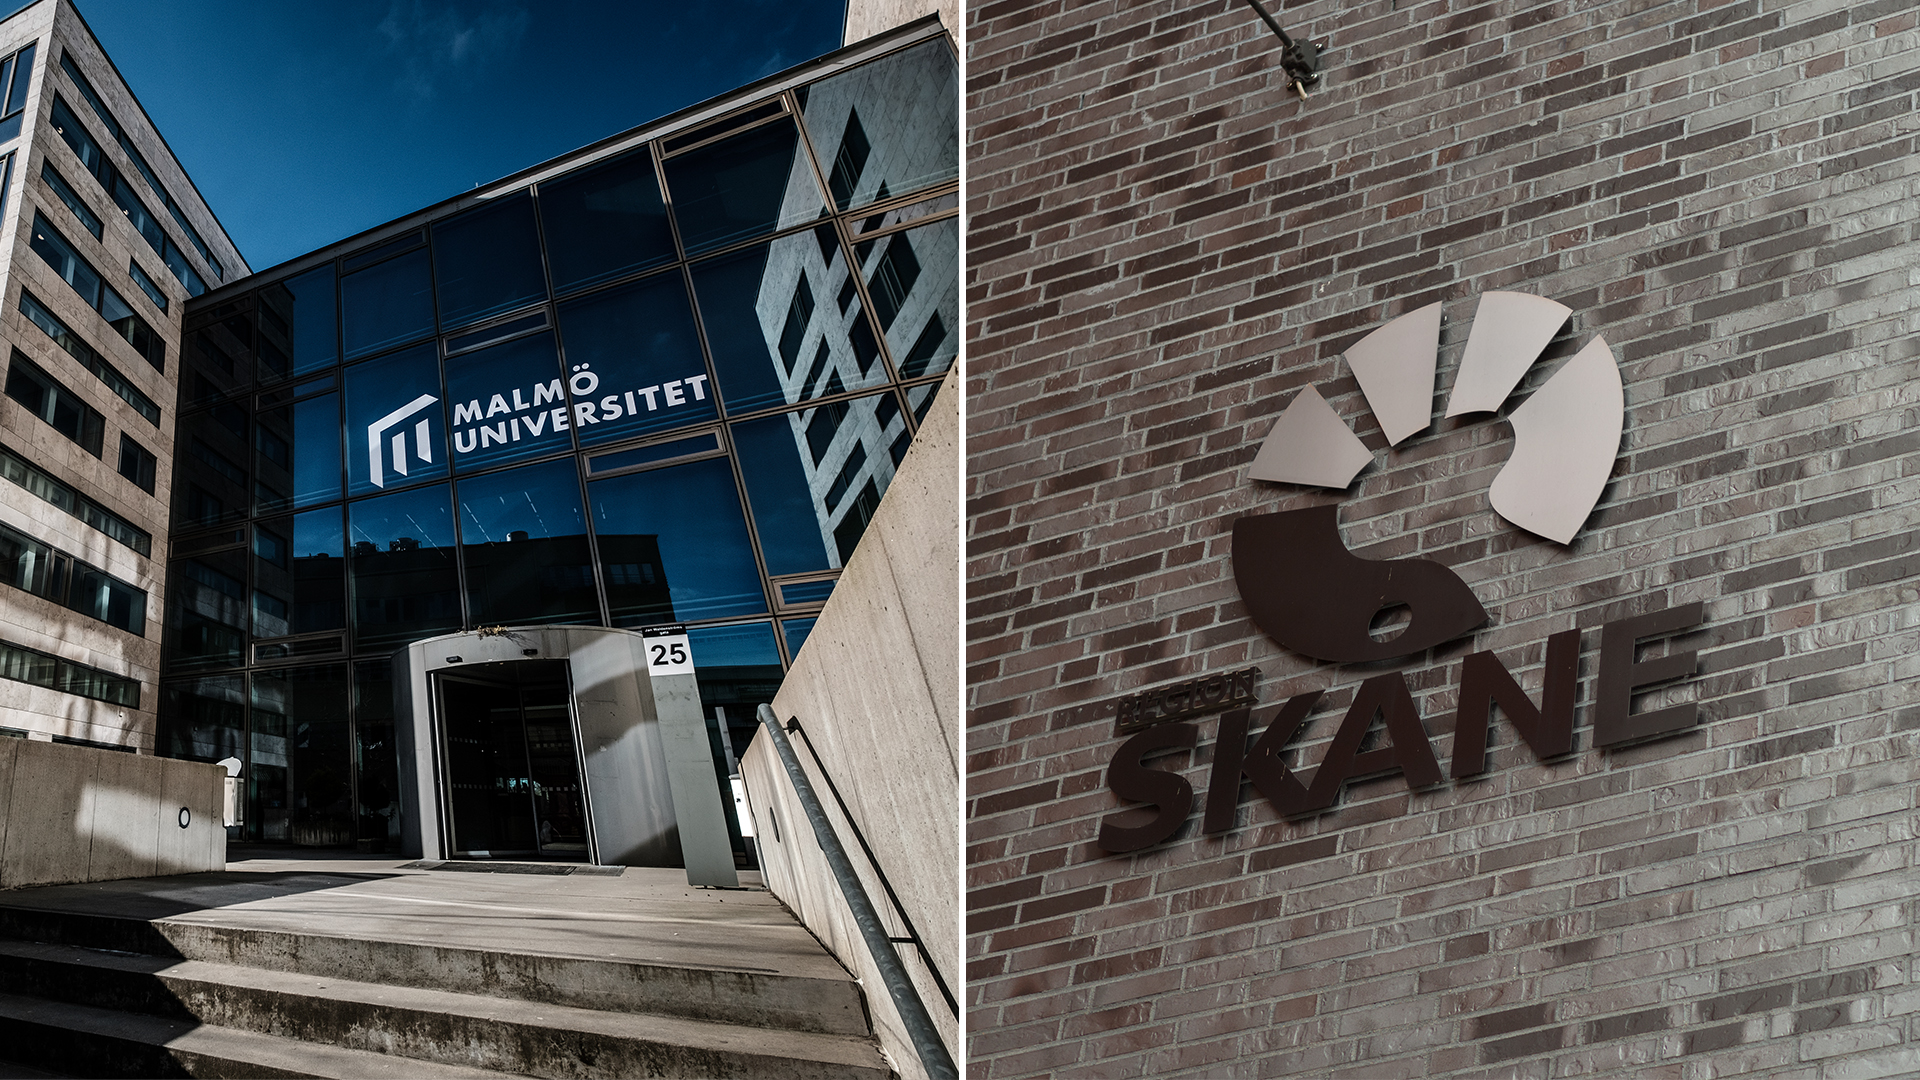 Delad bild på fasade till Malmö universitets-byggnad och fasad prydd med Region Skånes logotyp.